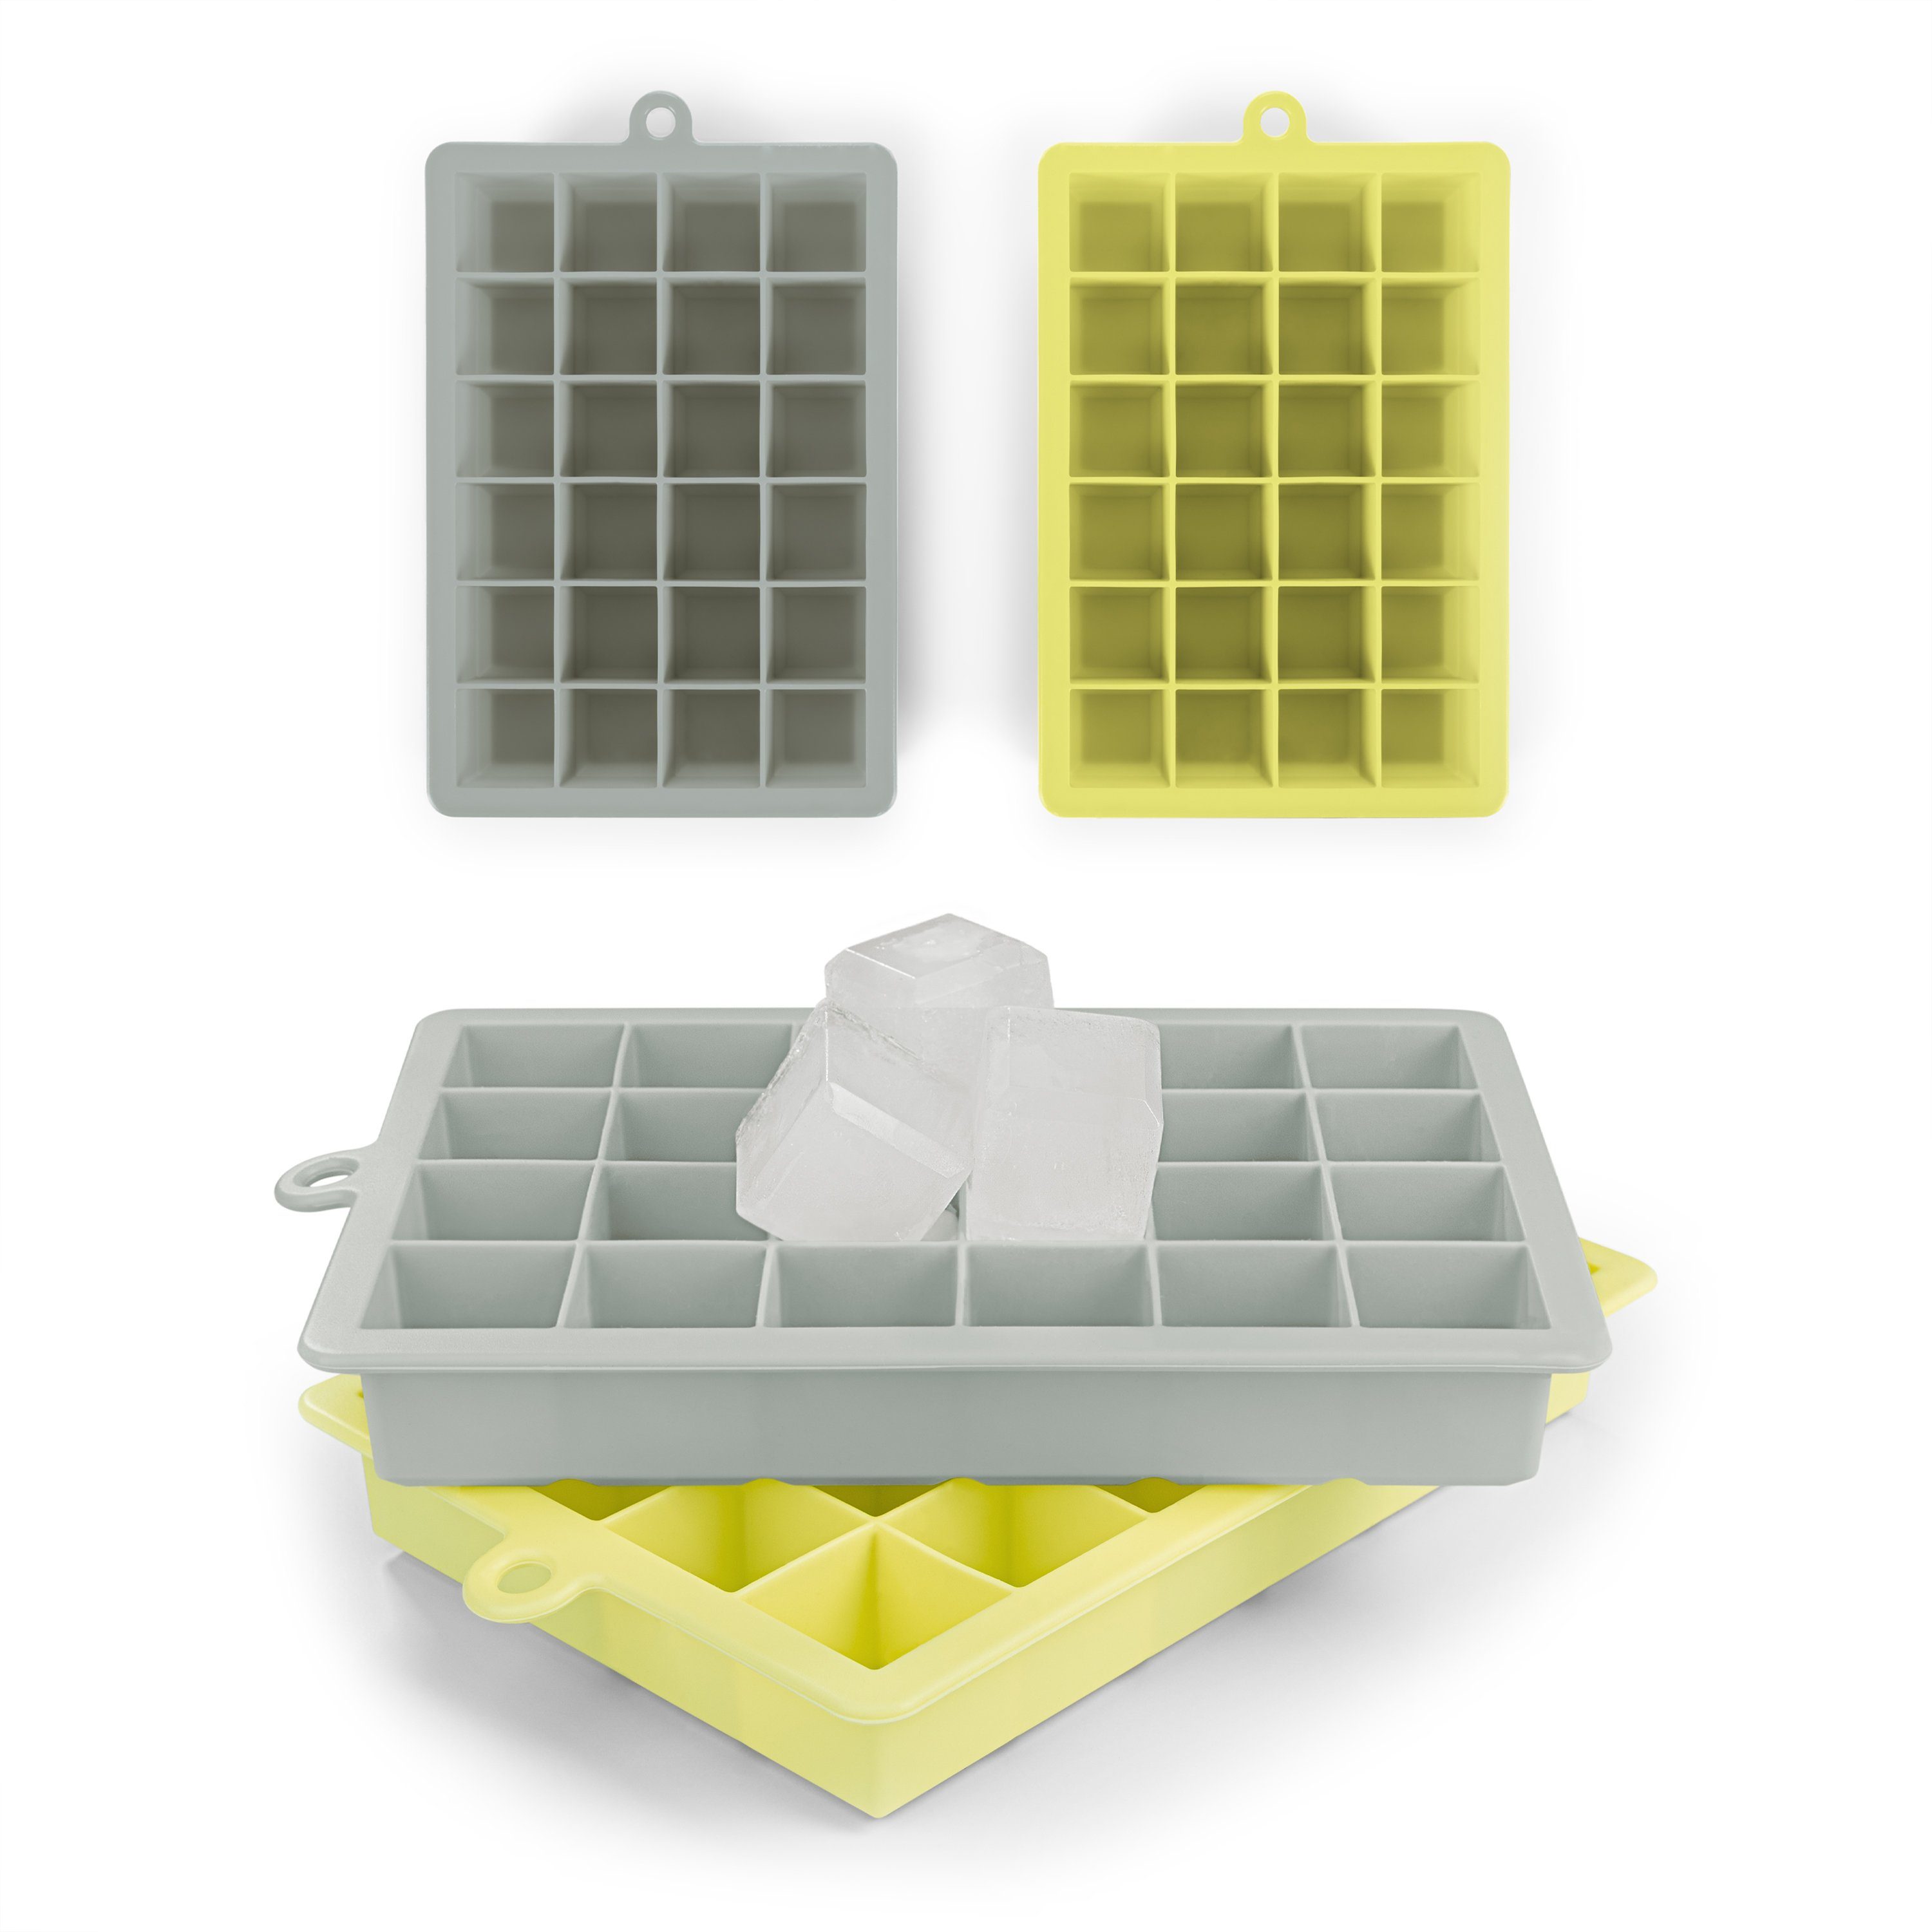 Blumtal Eiswürfelform Eiswürfelform Silikon Würfel - Würfelgröße M, 2x24er Pack, BPA frei, Leichtes Herauslösen der Eiswürfel Grau & Gelb